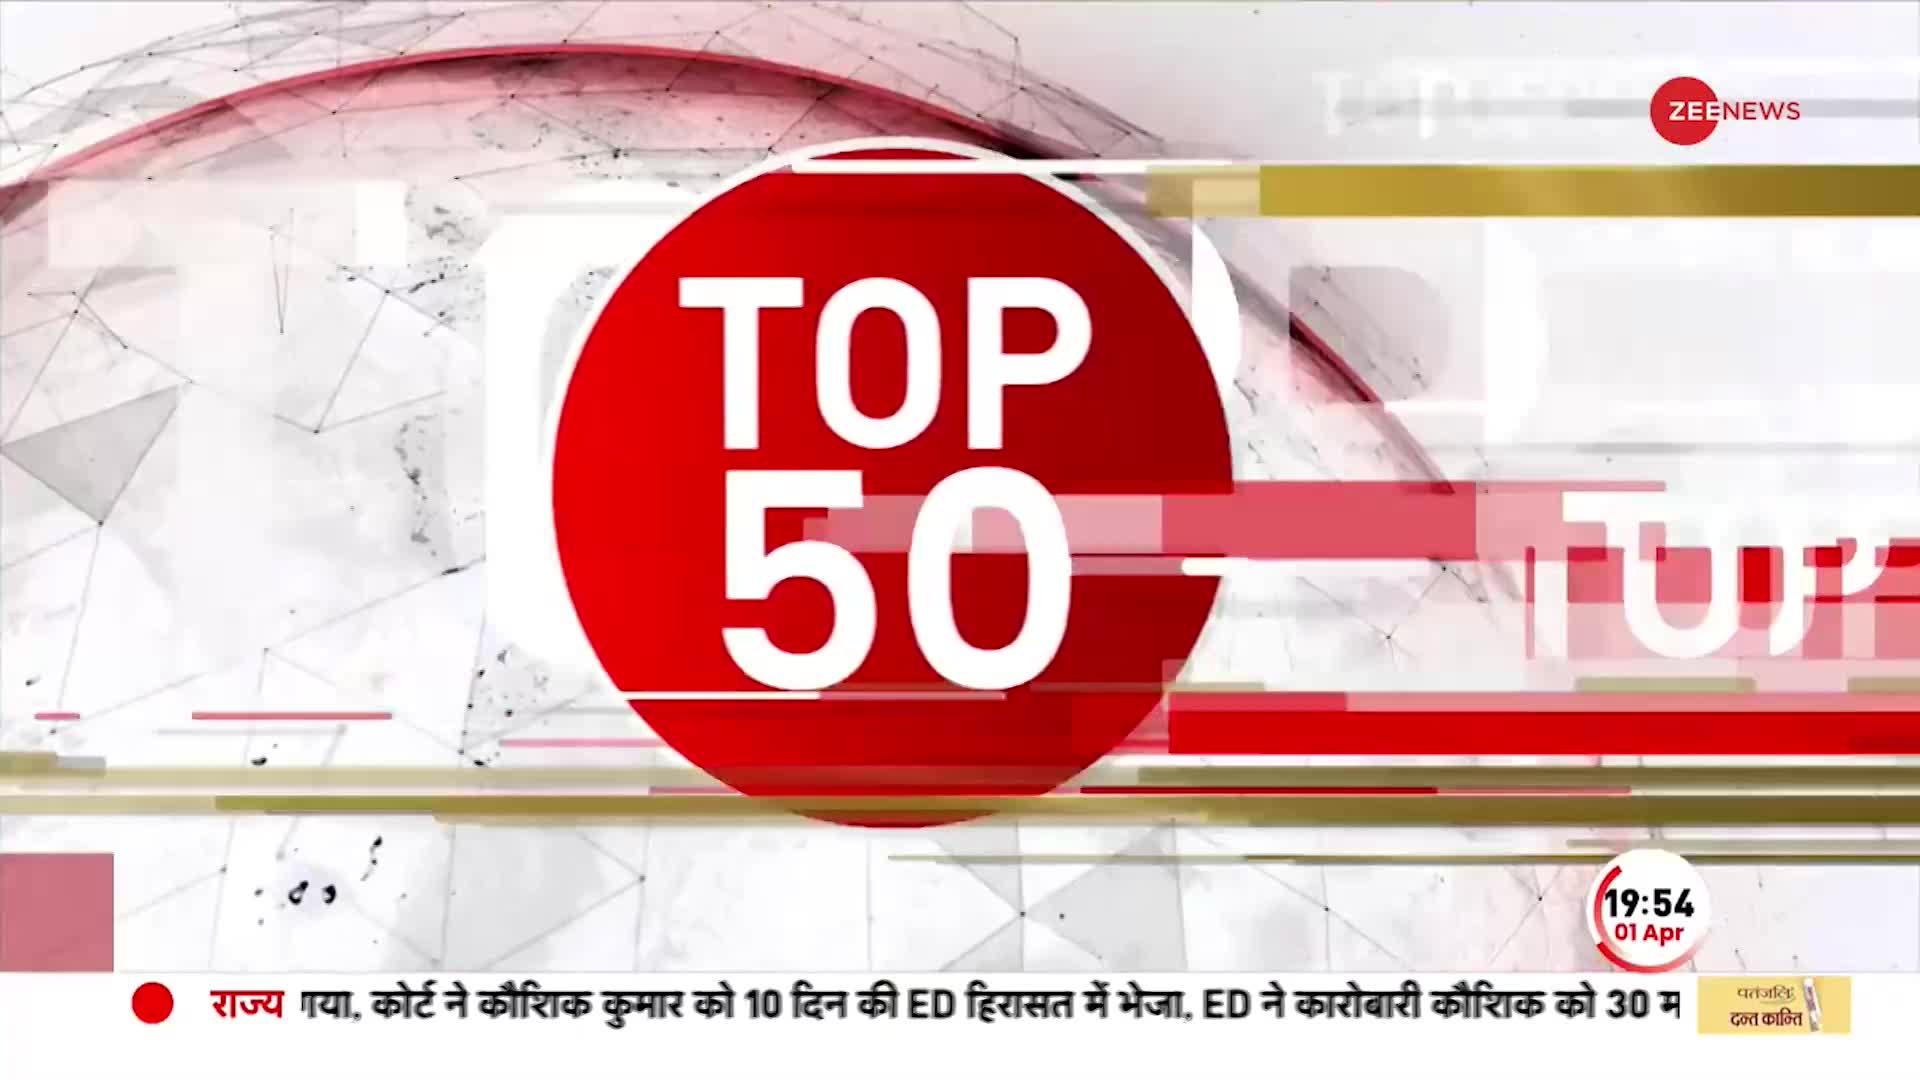 TOP 50: बिहार शरीफ में लूटपाट का CCTV वीडियो, रामनवमी जुलूस के बाद लूट की वारदात